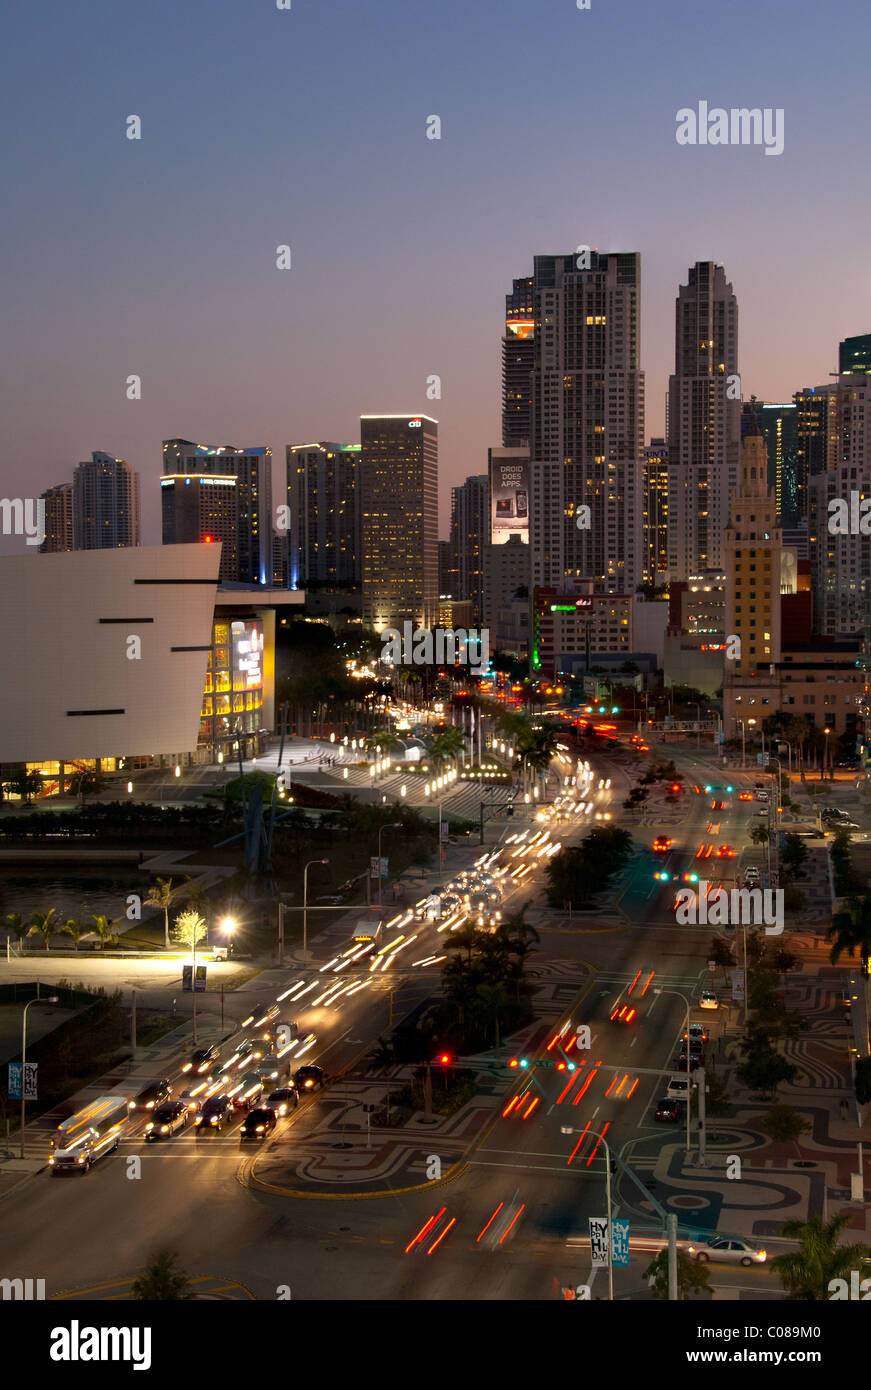 Di notte le luci di Biscayne Boulevard, American Airlines Arena e lo skyline di Miami, Florida, Stati Uniti d'America Foto Stock